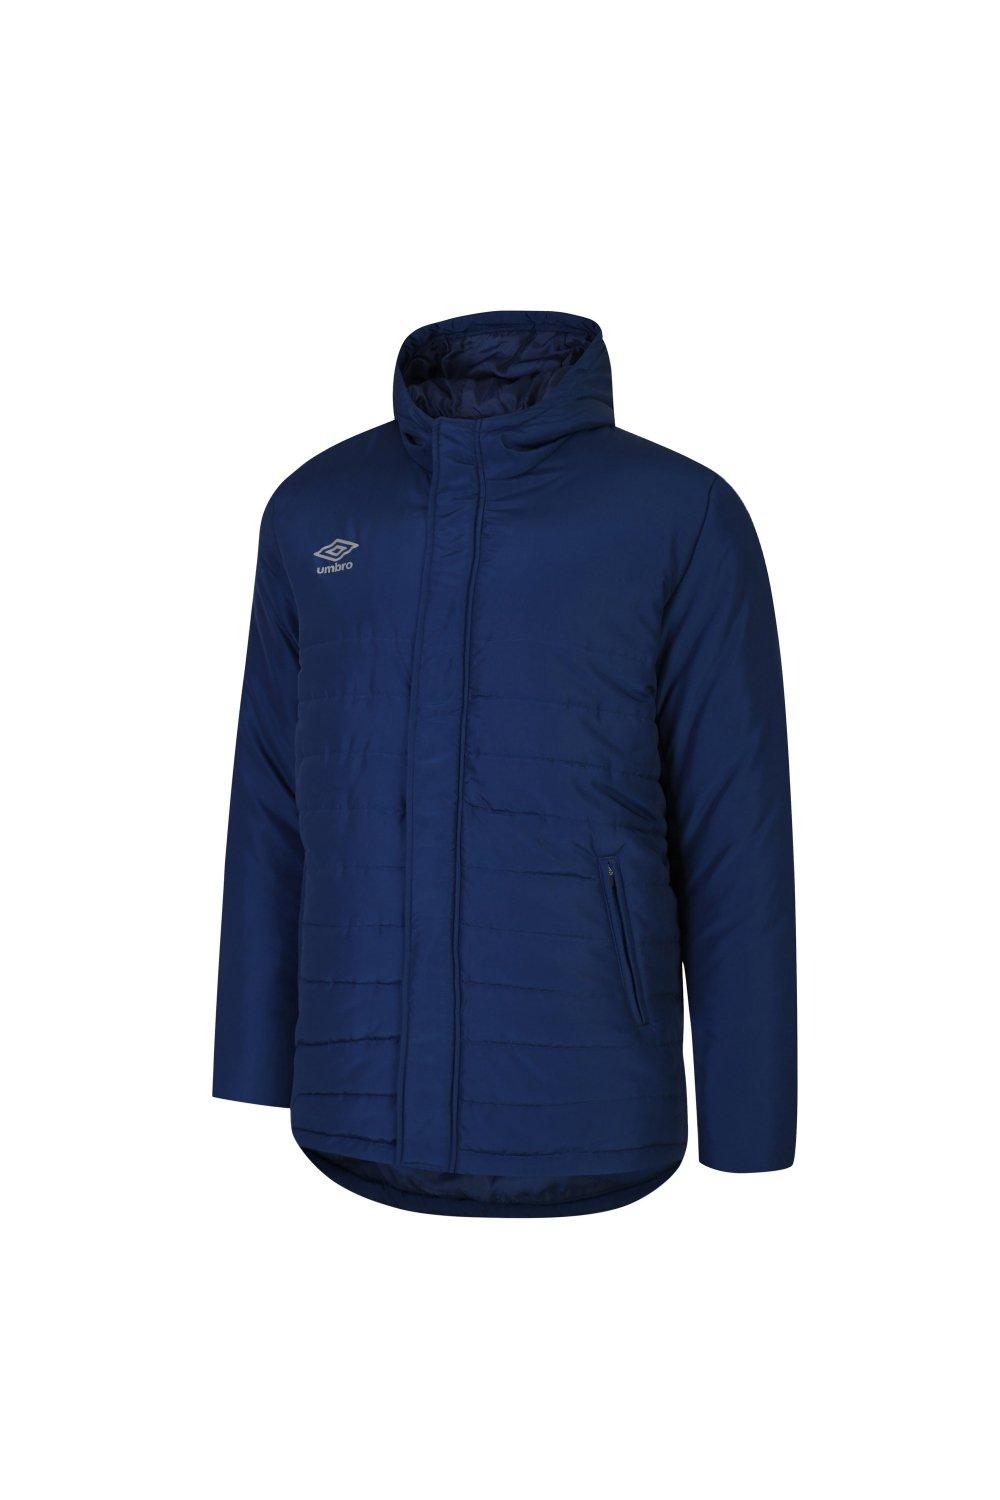 Утепленная куртка для скамейки Umbro, темно-синий куртка umbro силуэт свободный утепленная размер xxxl синий